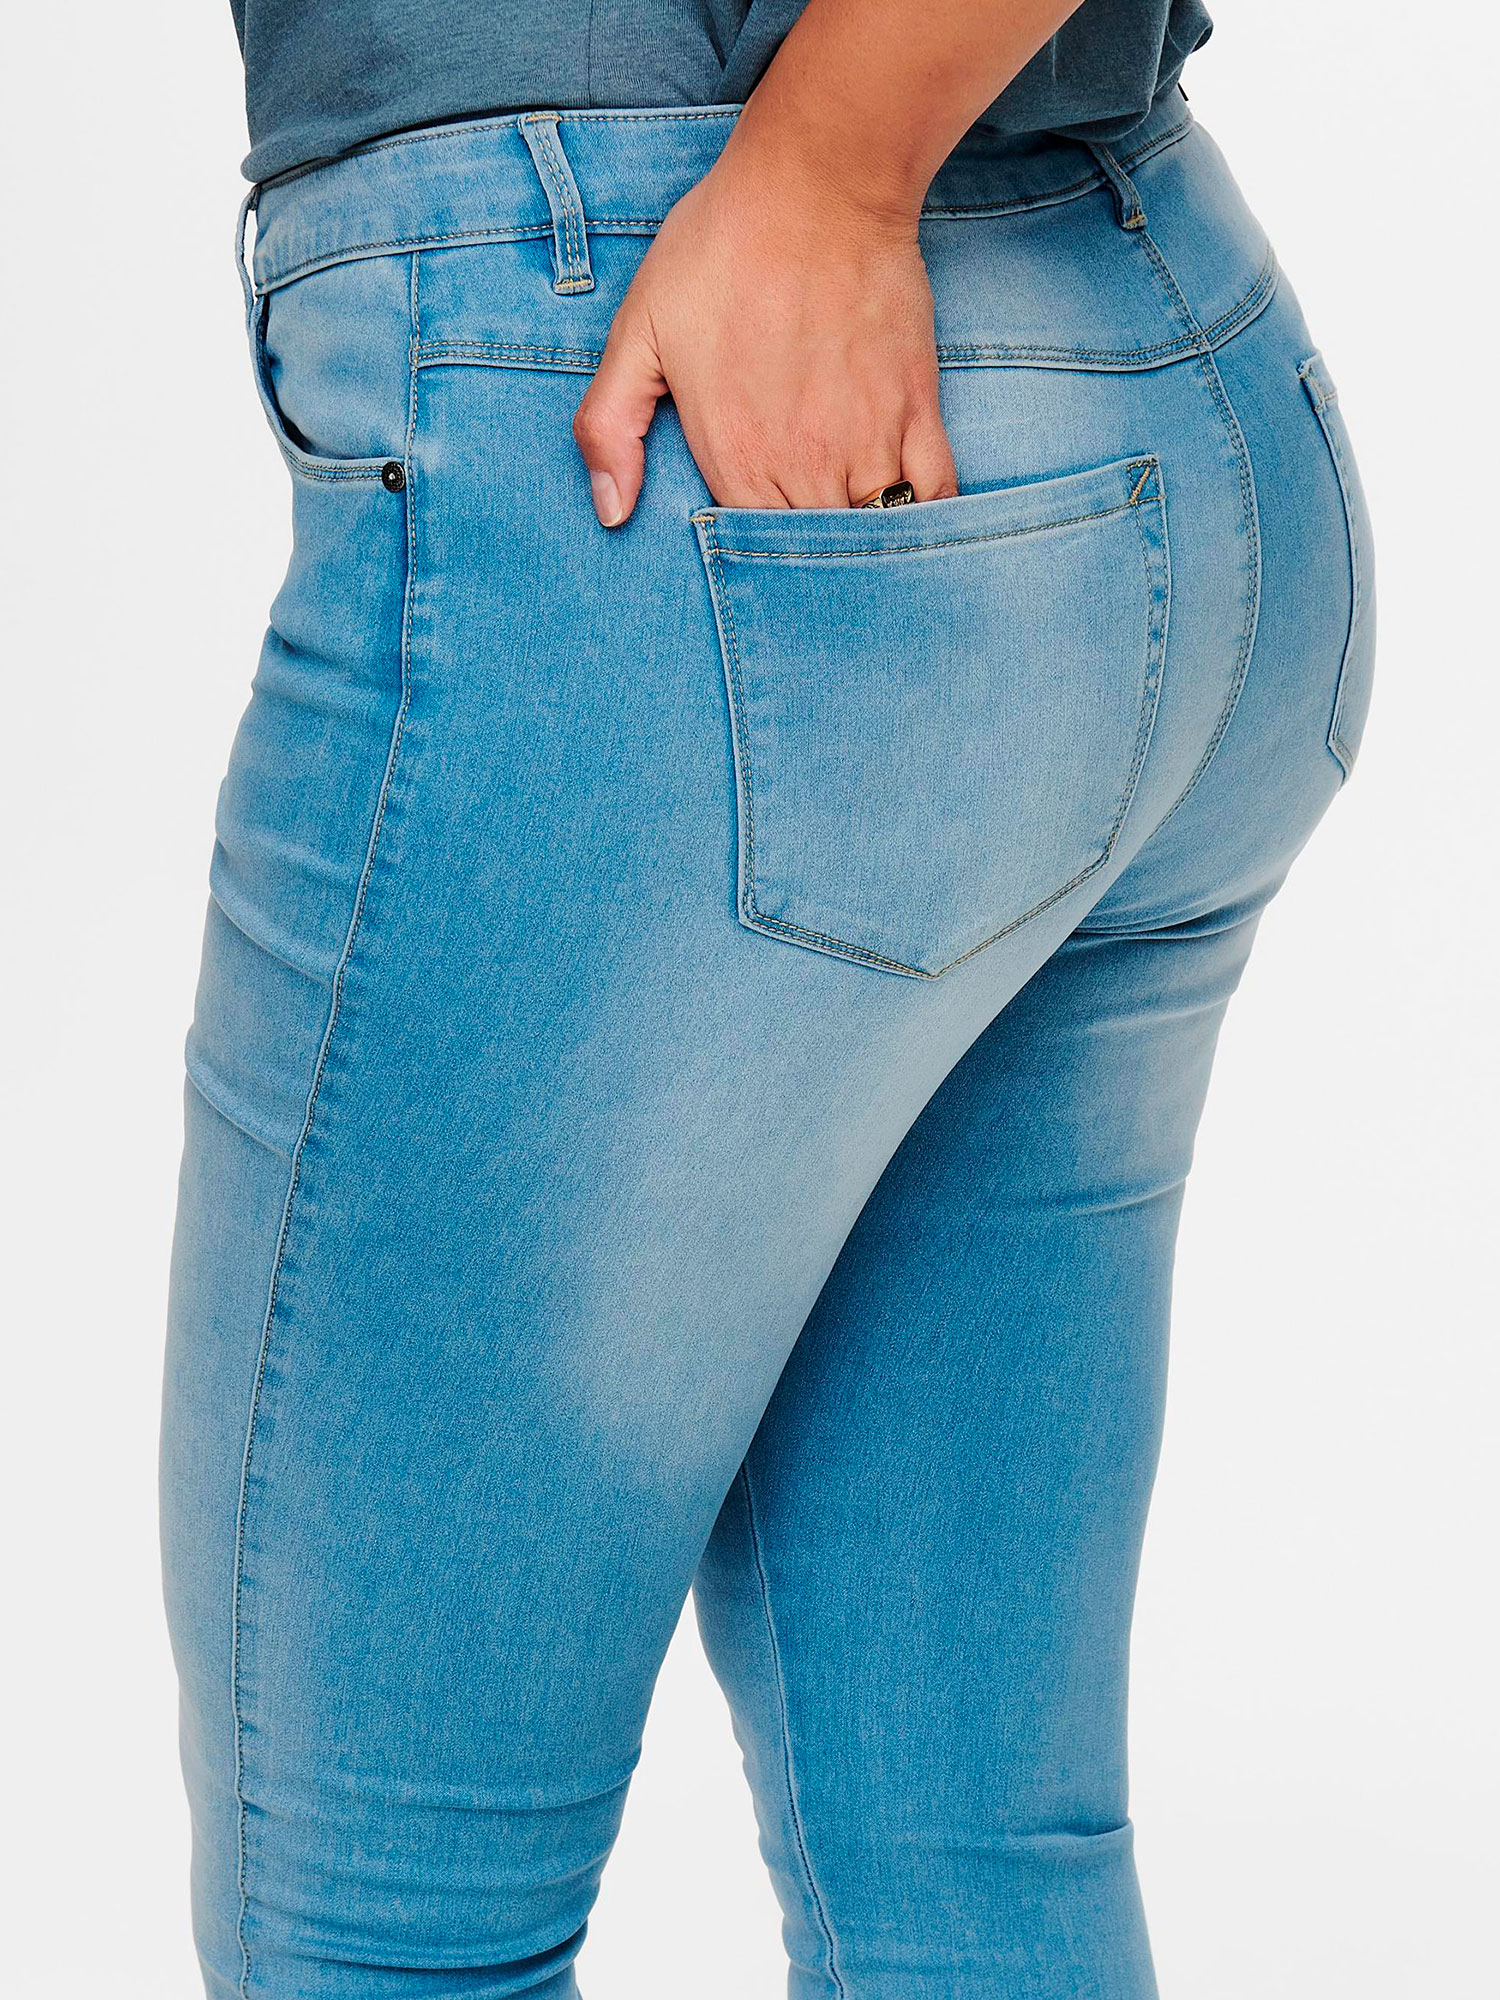 AUGUSTA - Lyseblå jeans i strækbar bomulds denim, længde 34 fra Only Carmakoma